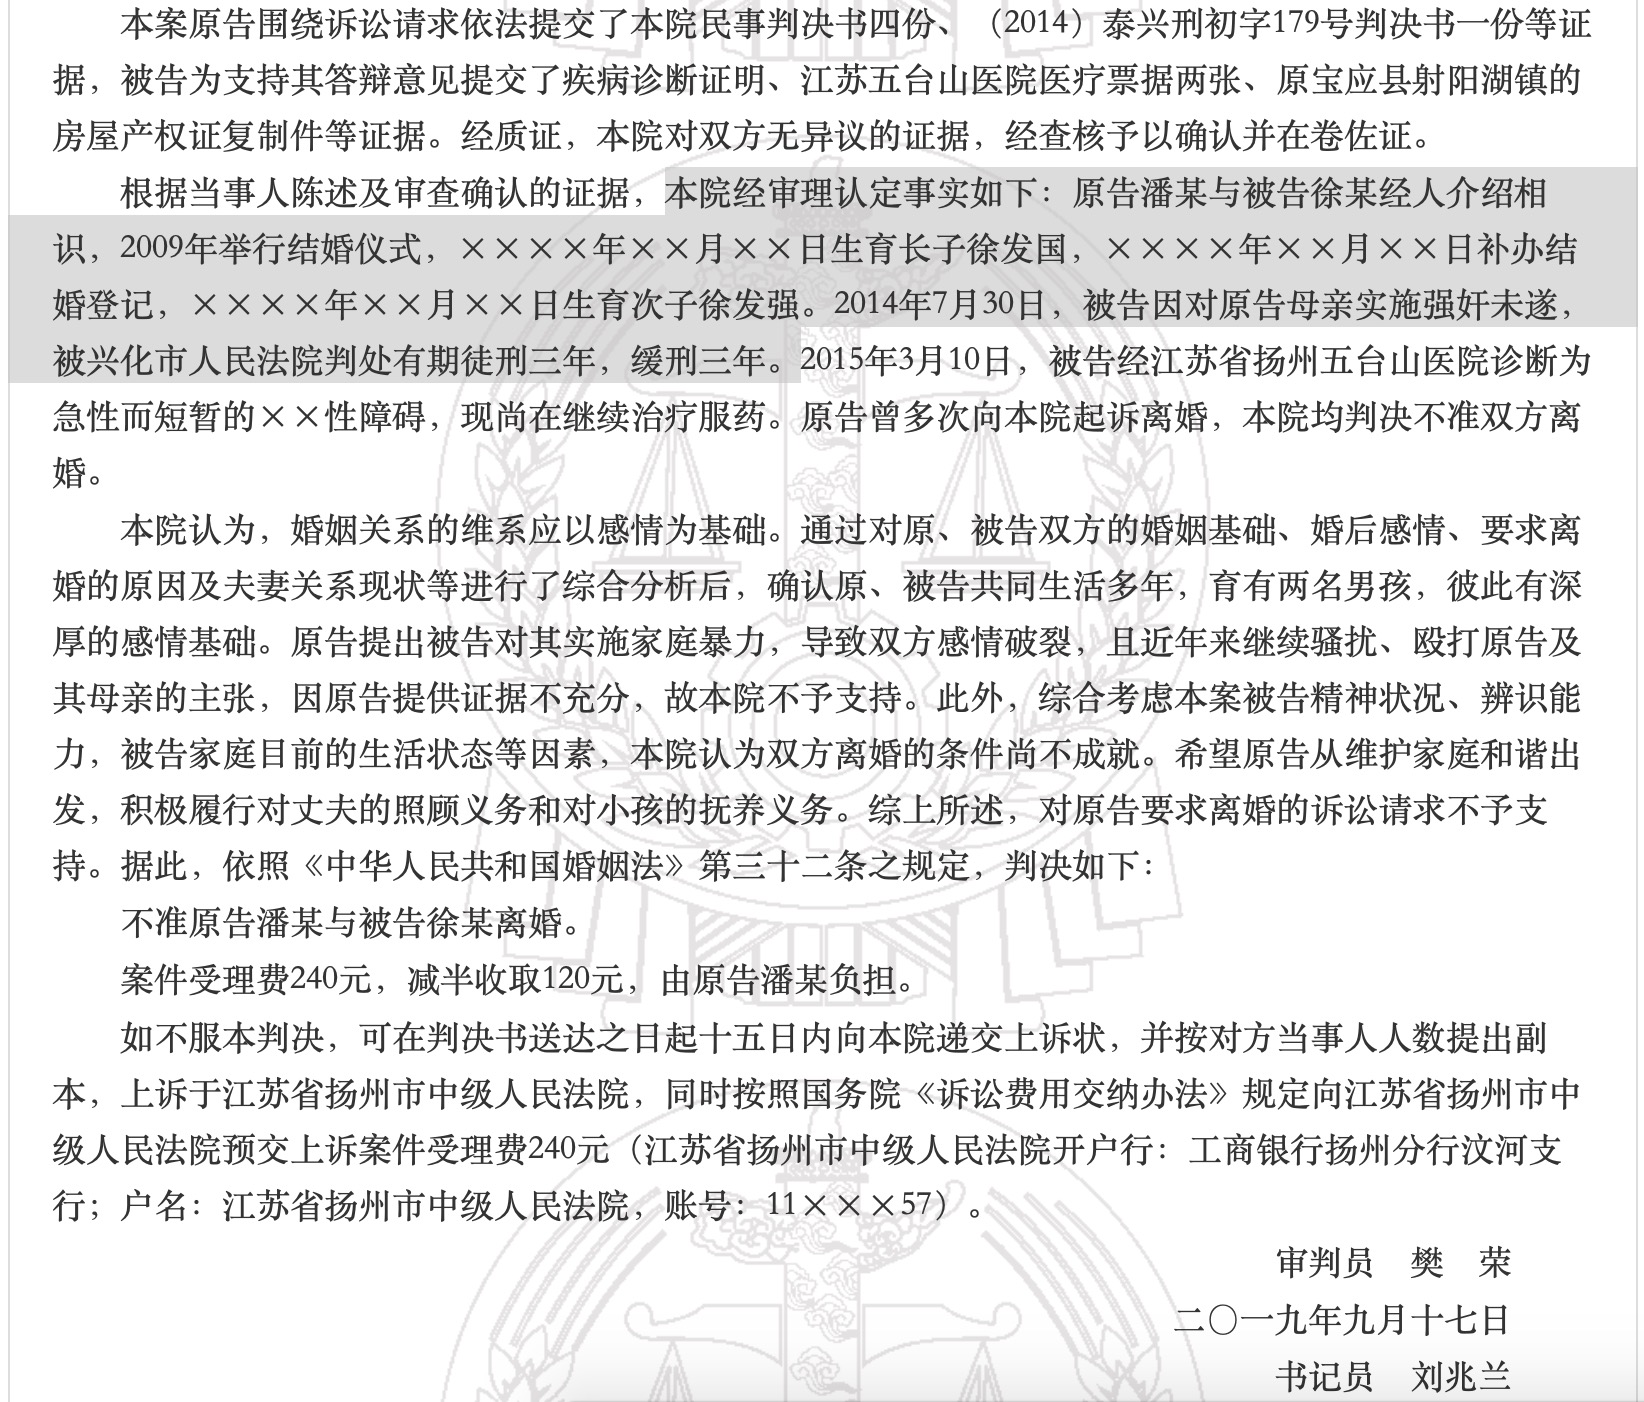 潘某与徐某离婚案判决书截图。来源：中国裁判文书网